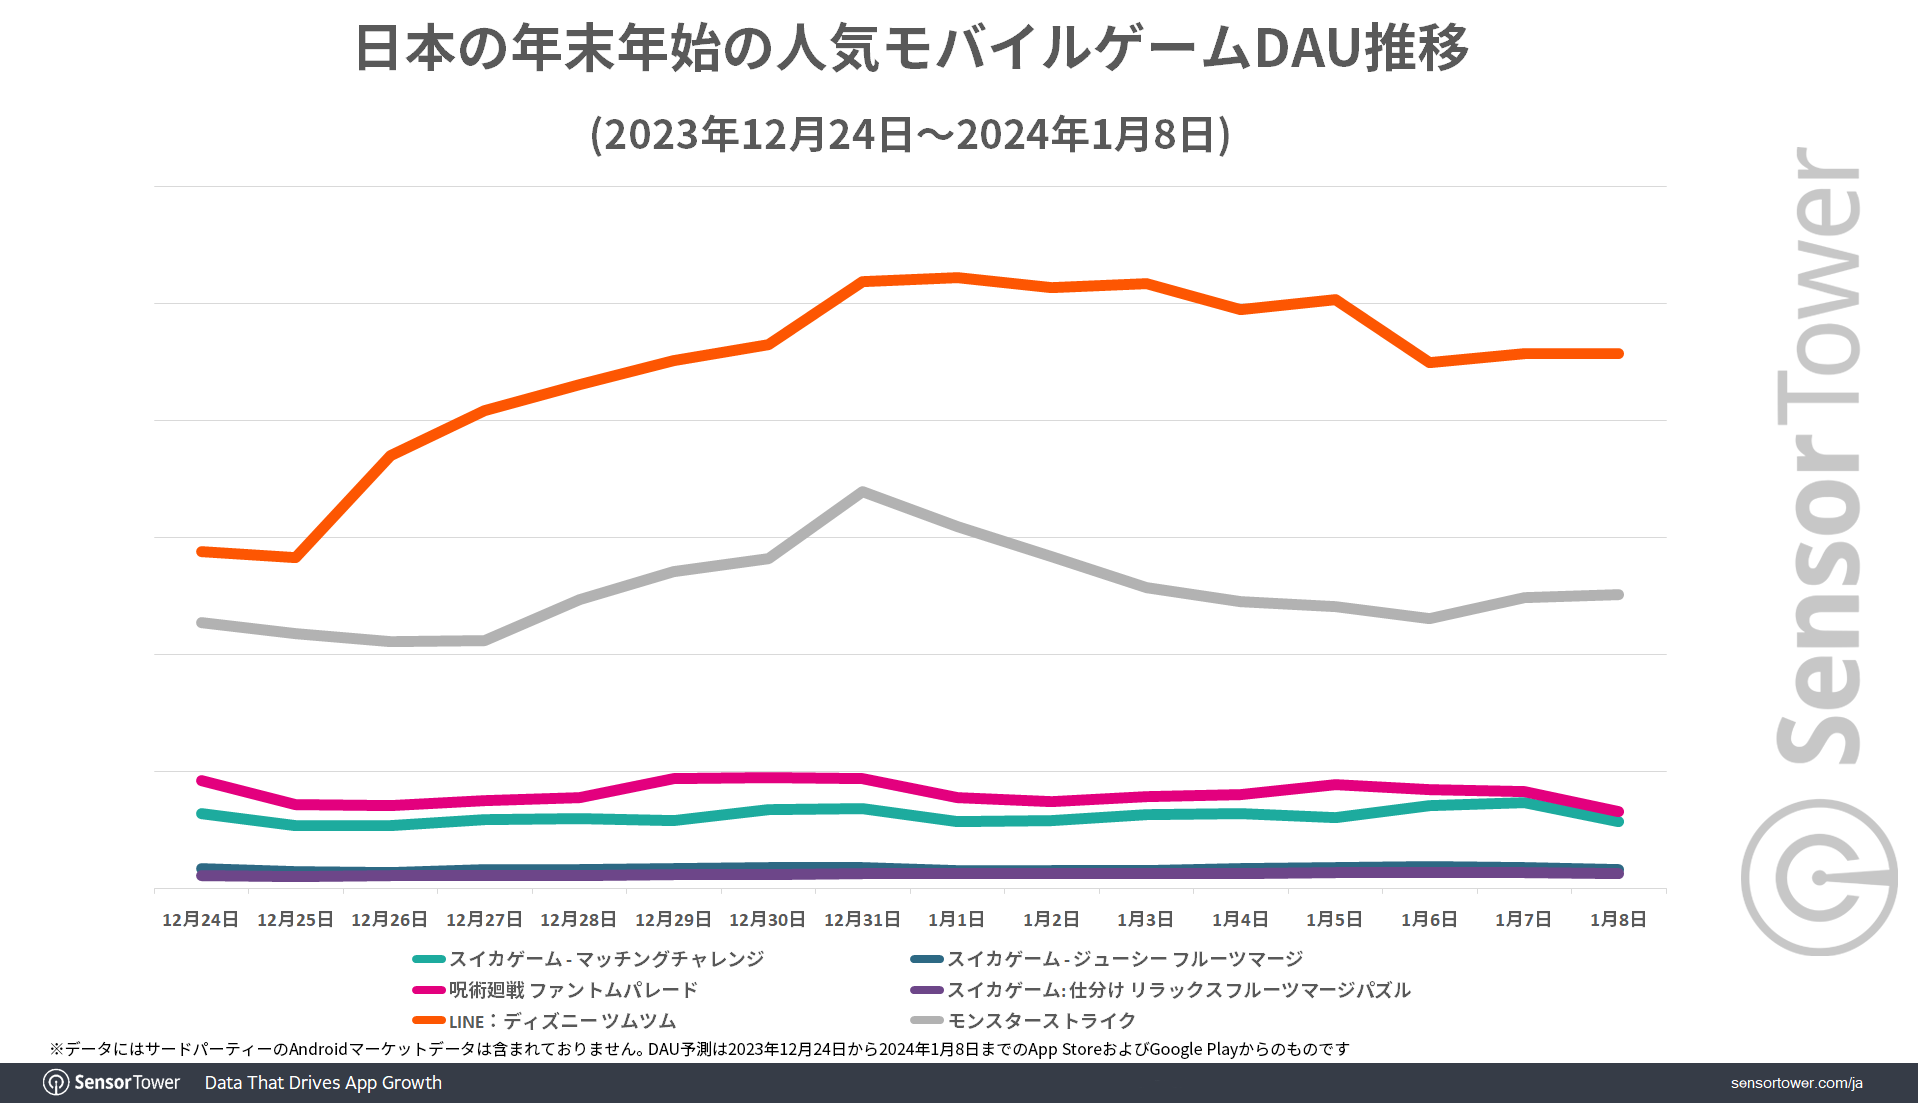 DL-Top-Games-DAU-Trend-Japan